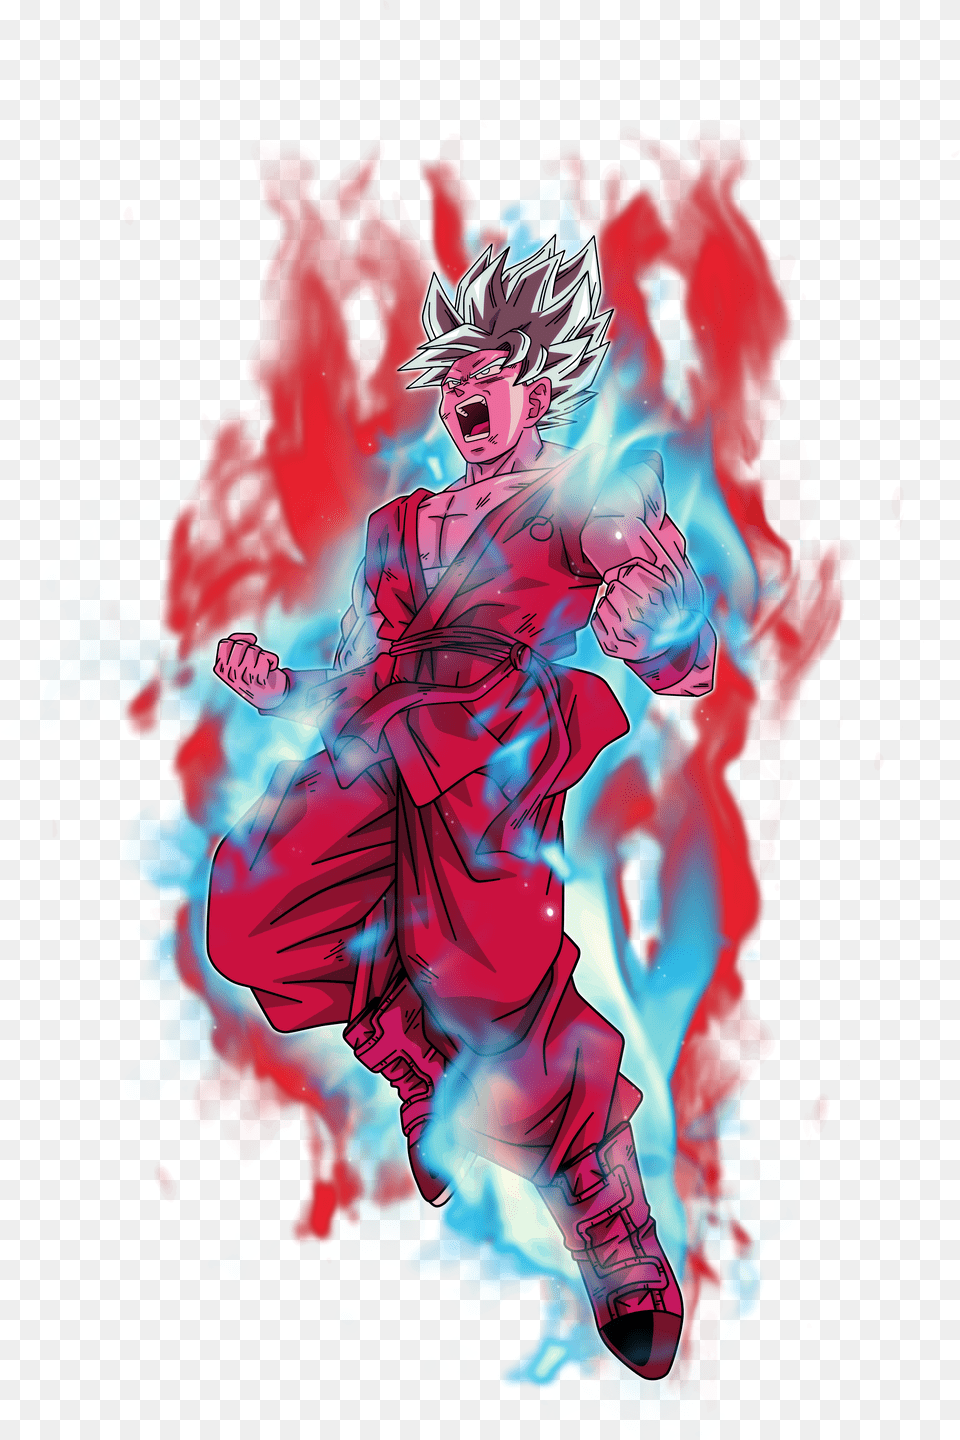 Goku Super Saiyan Blue Kaioken X10 By Bardocksonic Free Transparent Png